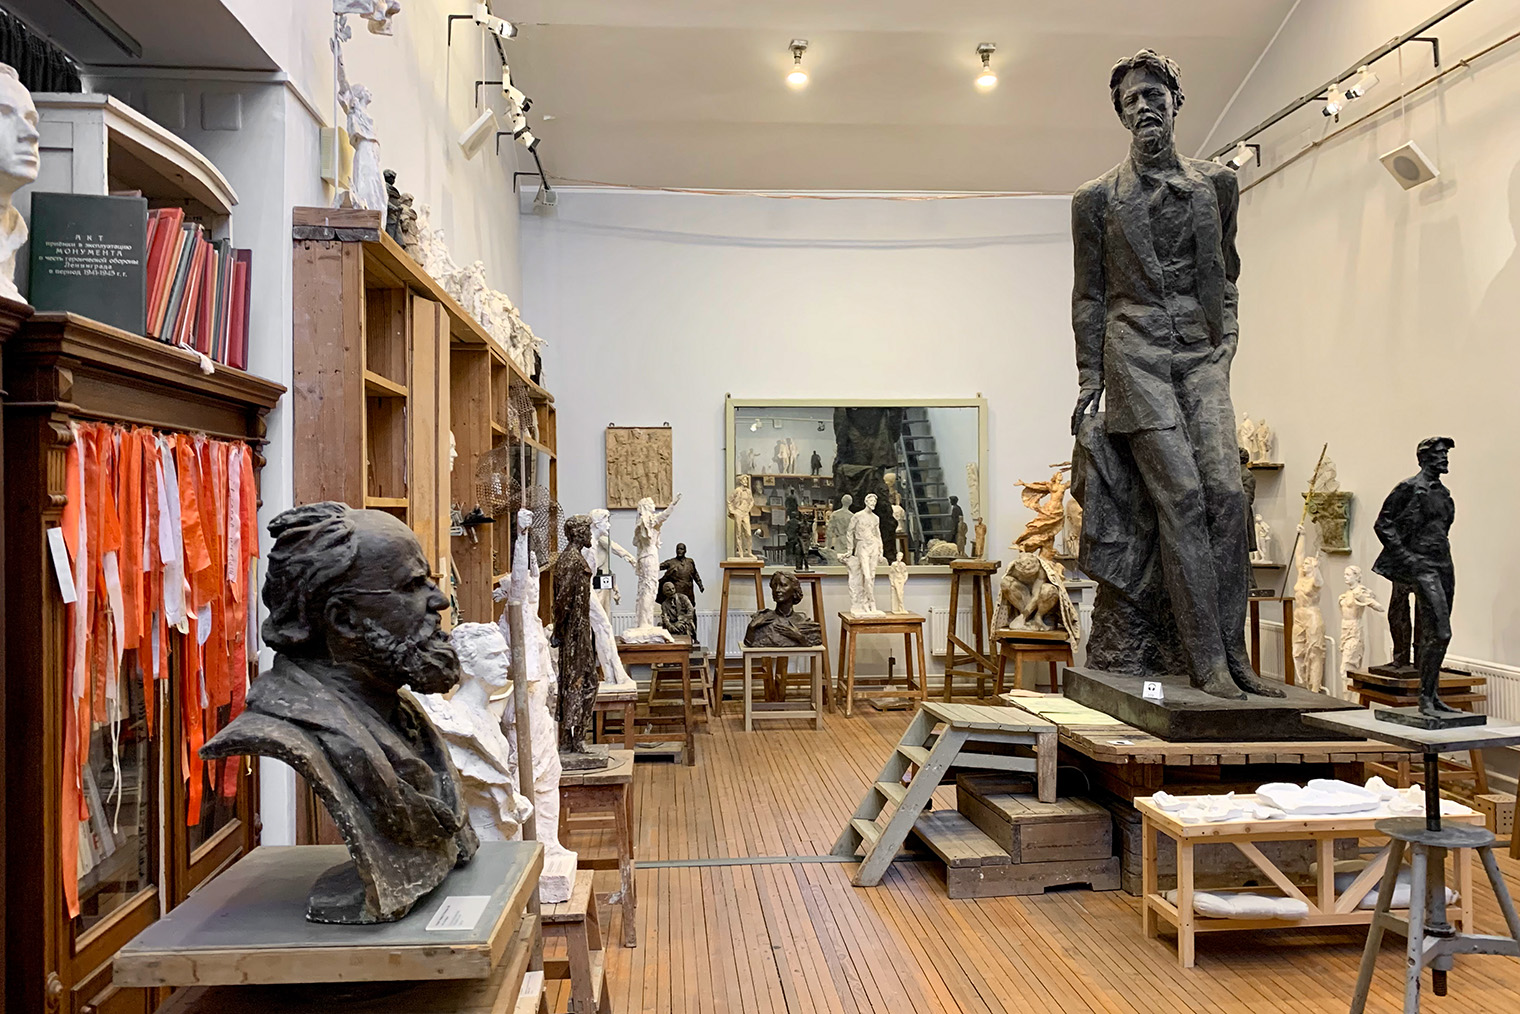 В музее Аникушина мне больше всего нравится небольшая мастерская, где скульптор разрабатывал идеи и изготавливал макеты будущих памятников